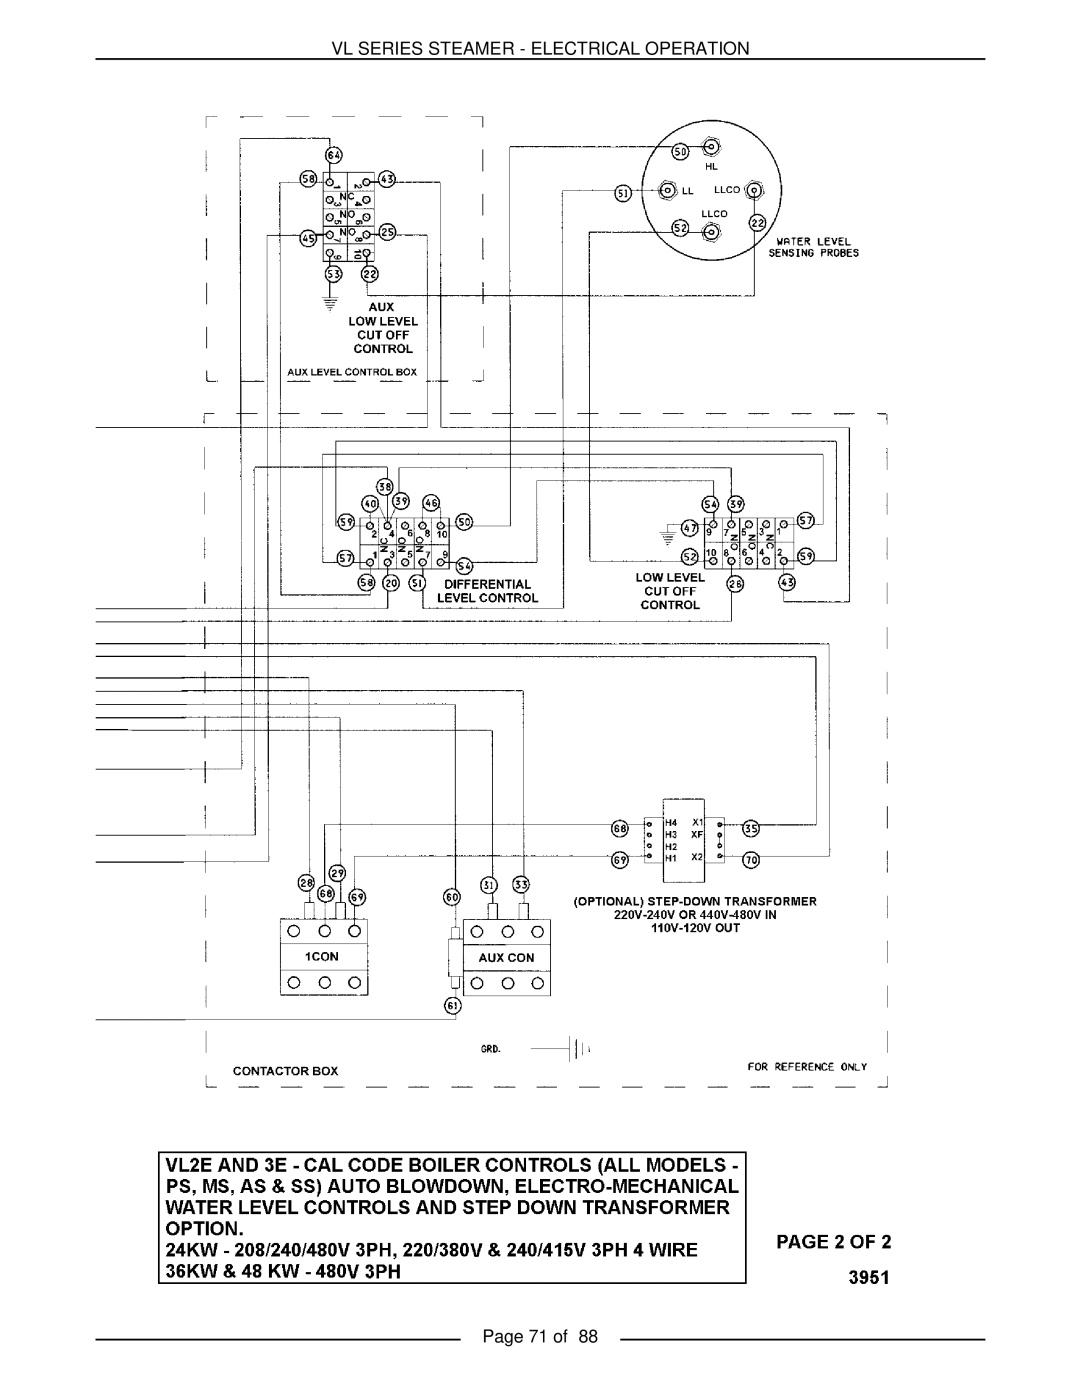 Vulcan-Hart VL2GPS, VL3GMS, VL2GMS, VL3GAS, VL2GAS, VL2GSS, VL3GSS, VL3GPS Vl Series Steamer - Electrical Operation, Page 71 of 